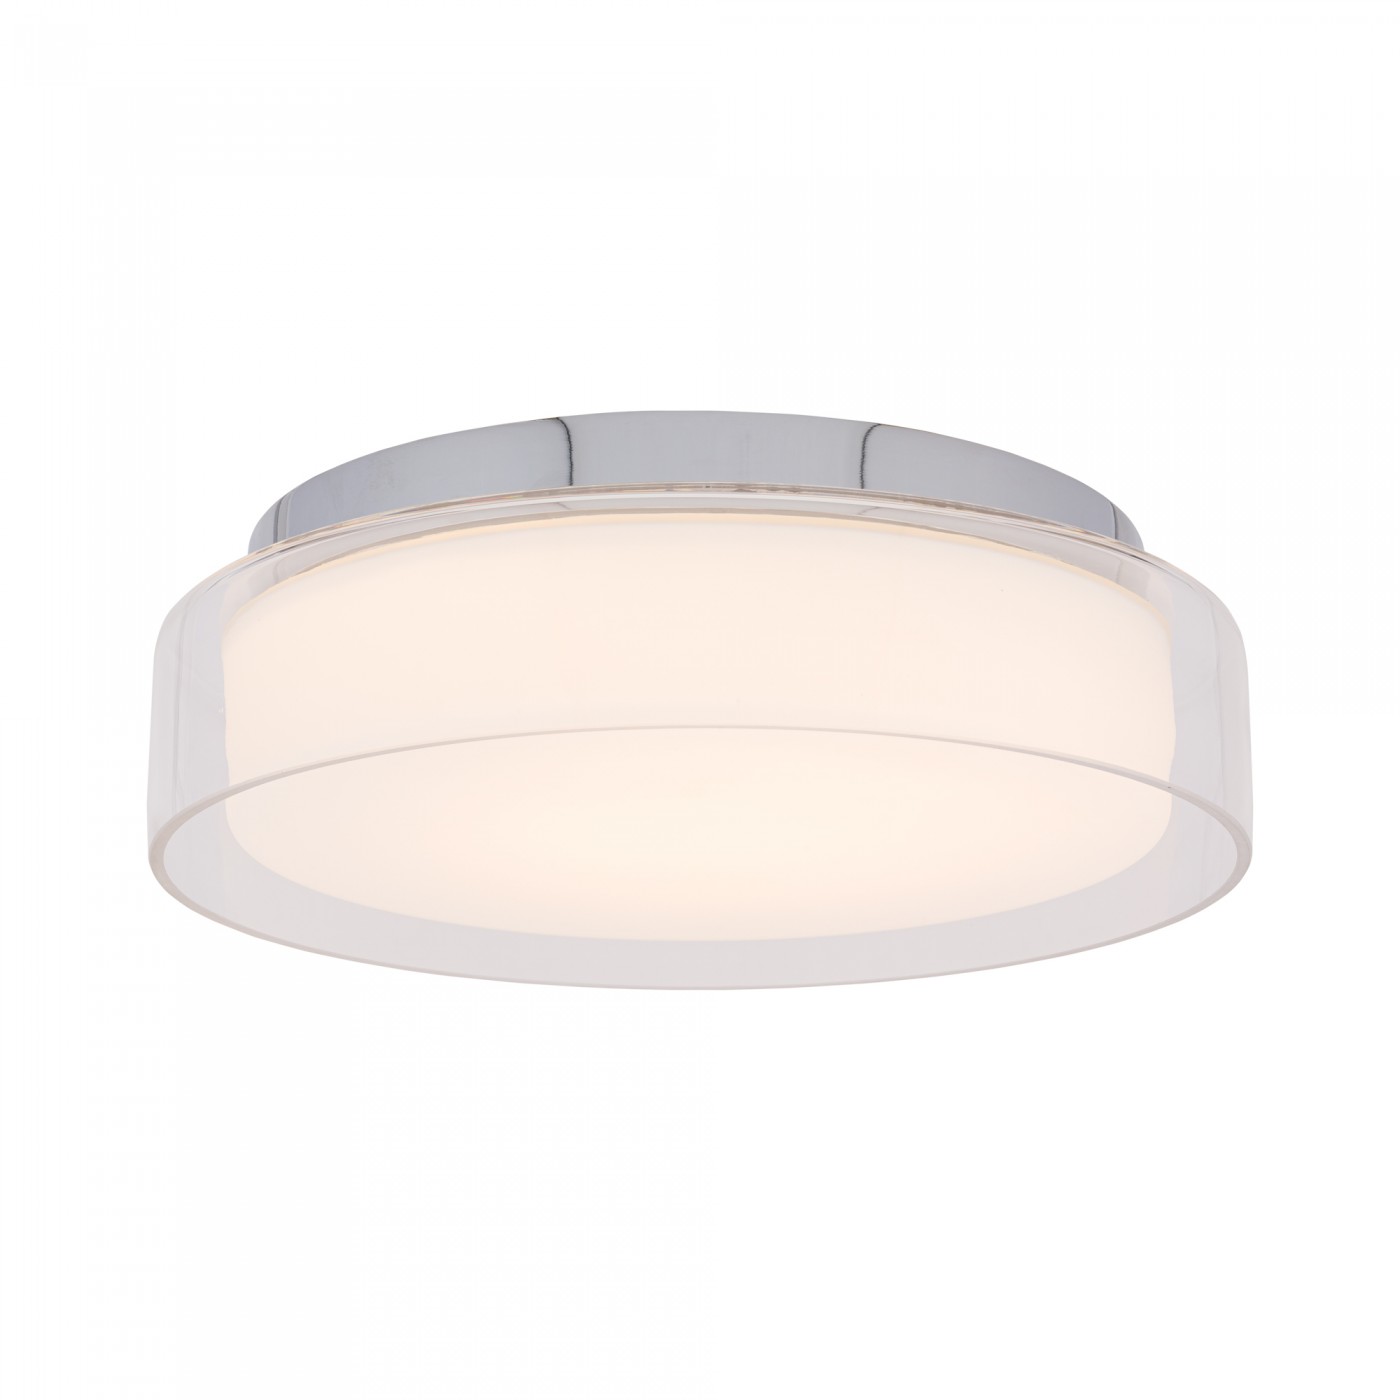 PAN LED S 8173 Nowodvorski Lighting